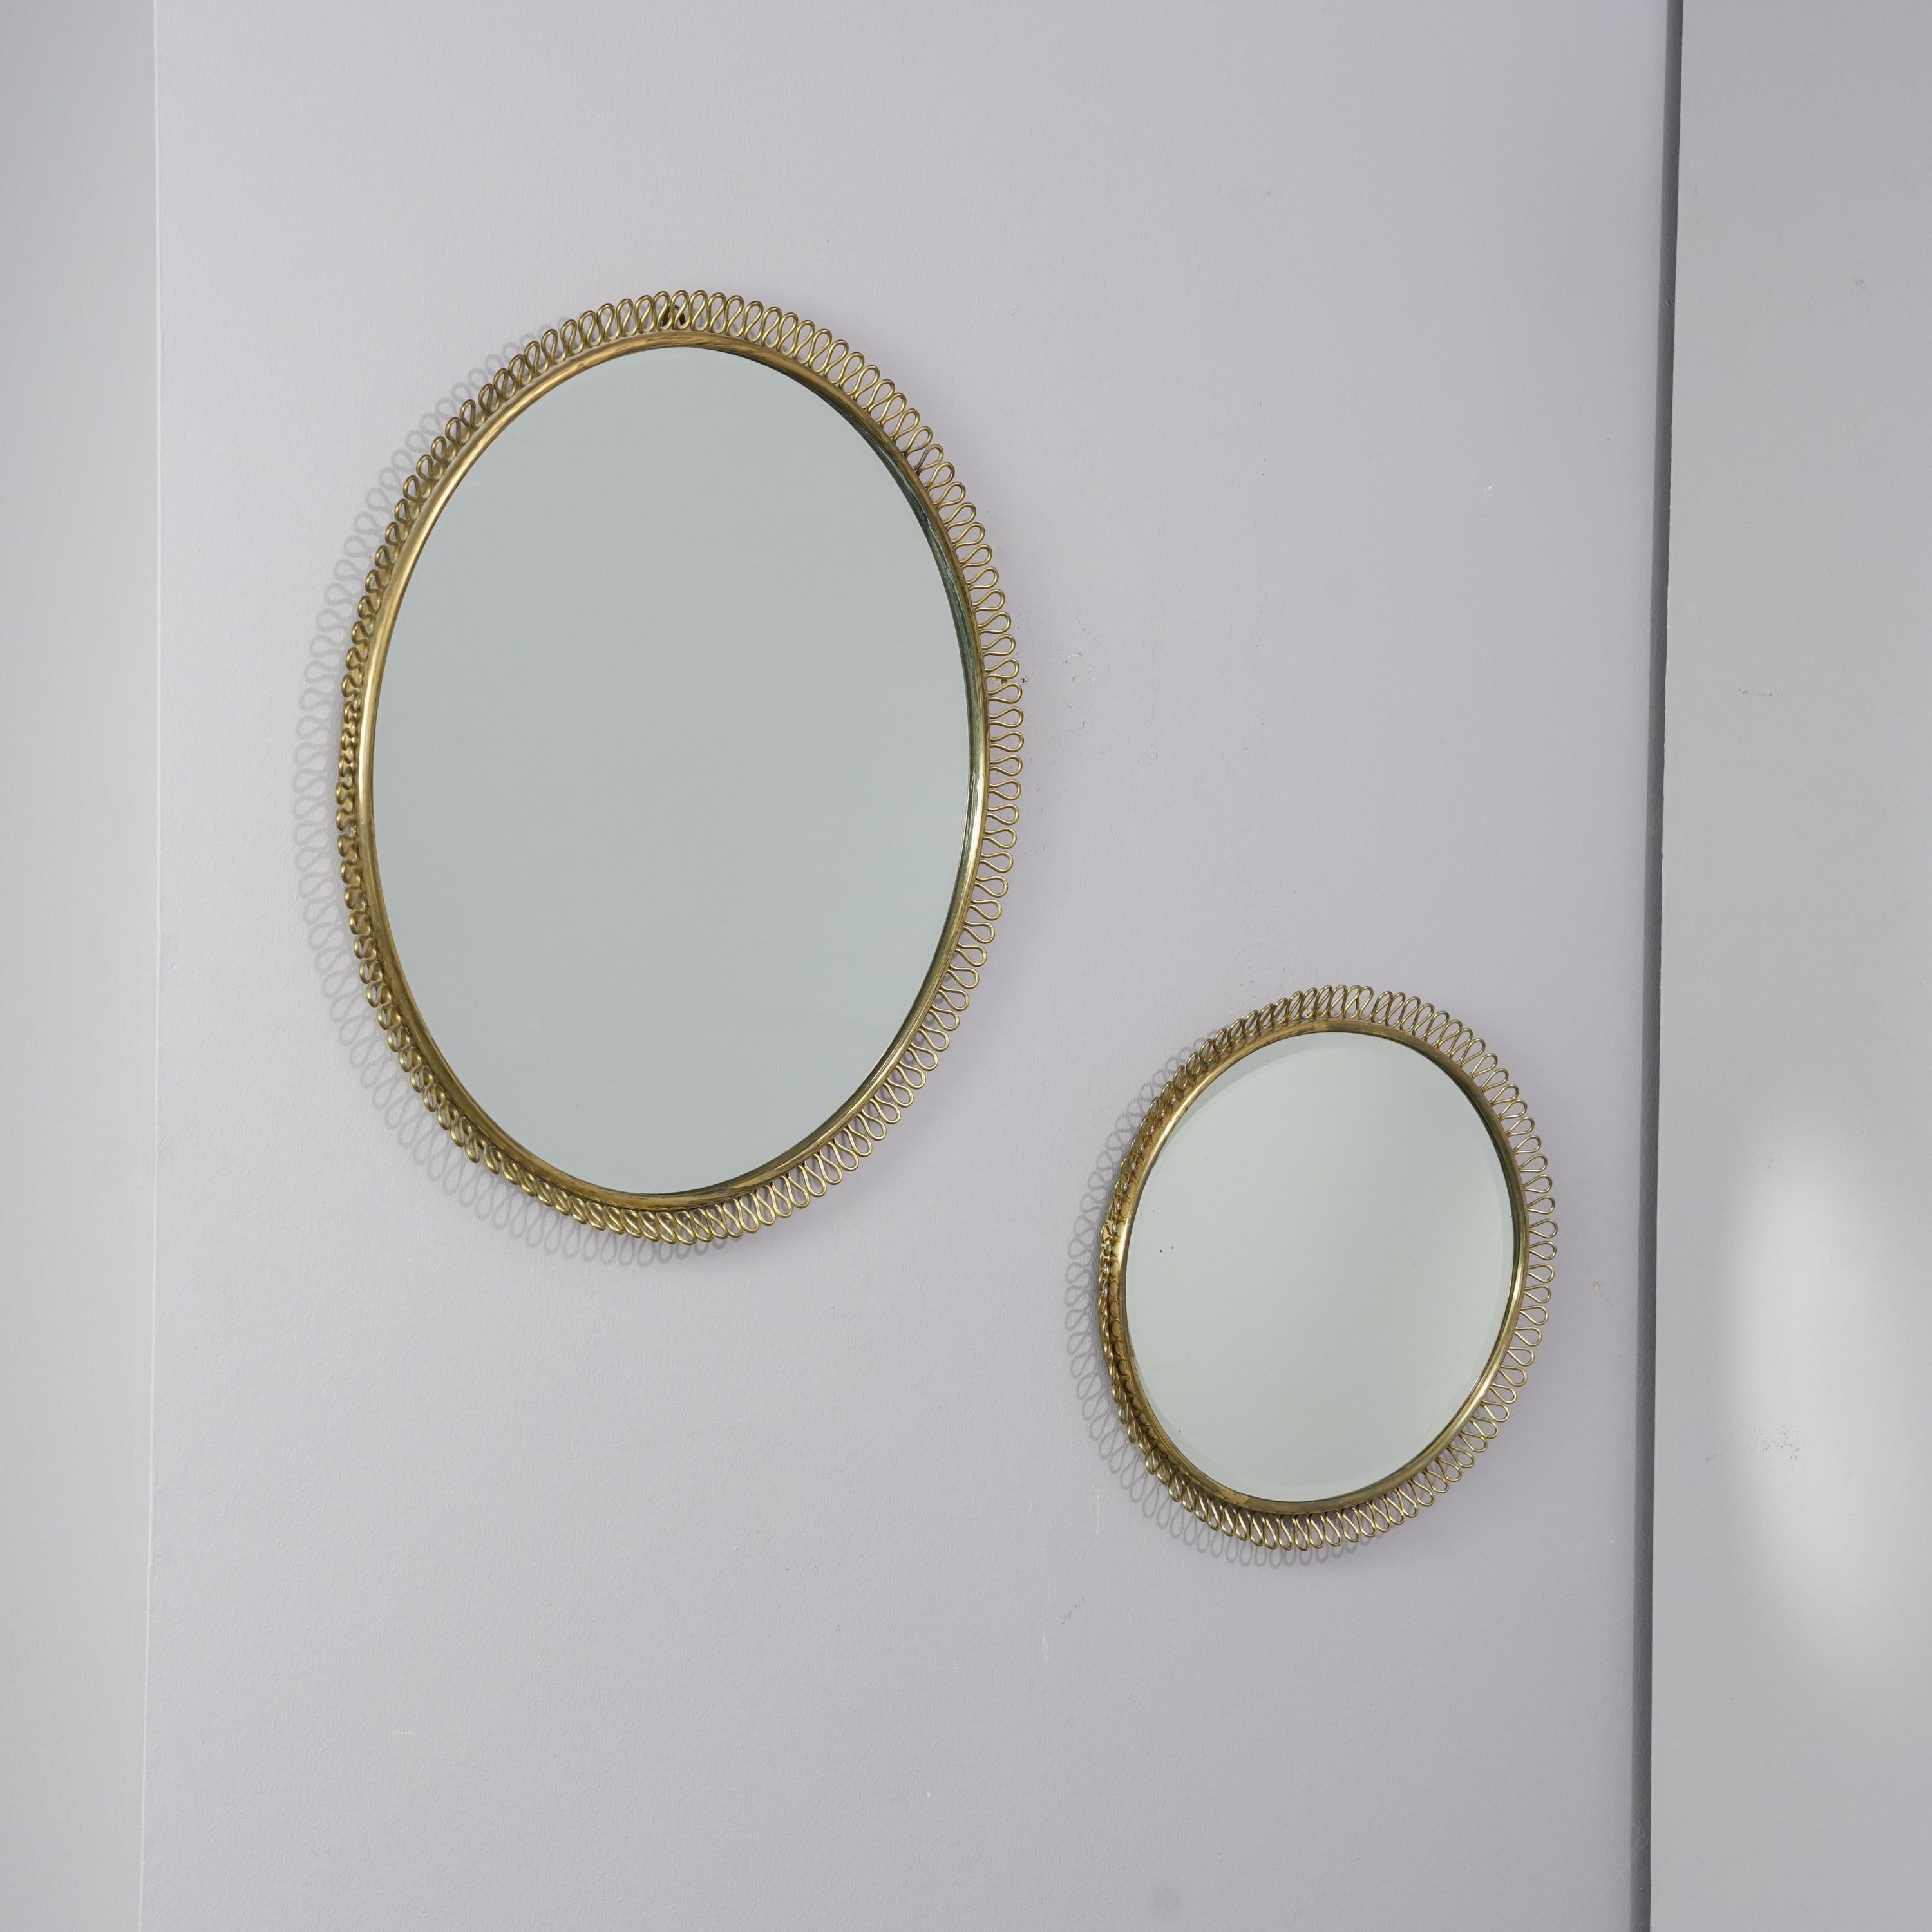 Äußerst seltene Wandspiegel, entworfen von Antti Hakkarainen für Taidetakomo Hakkarainen, Stempel auf der Unterseite, um 1930, Messing, sehr guter Zustand, leichte alters- und gebrauchsbedingte Abnutzung. Die Spiegel werden als Satz verkauft. 

Maße